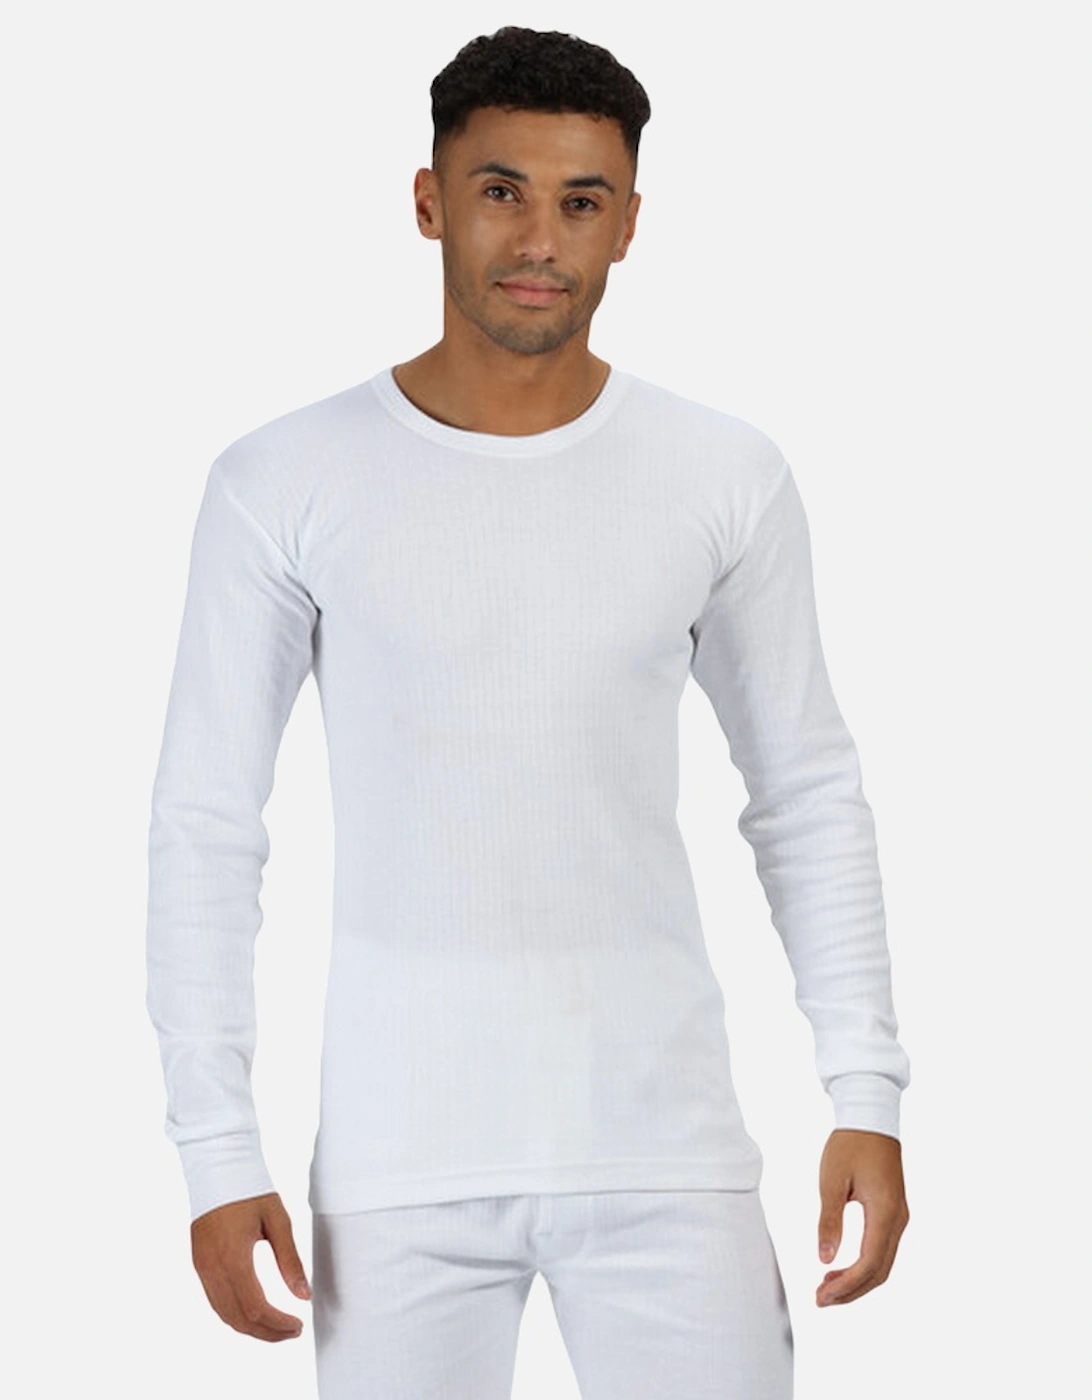 Thermal Underwear Long Sleeve Vest / Top